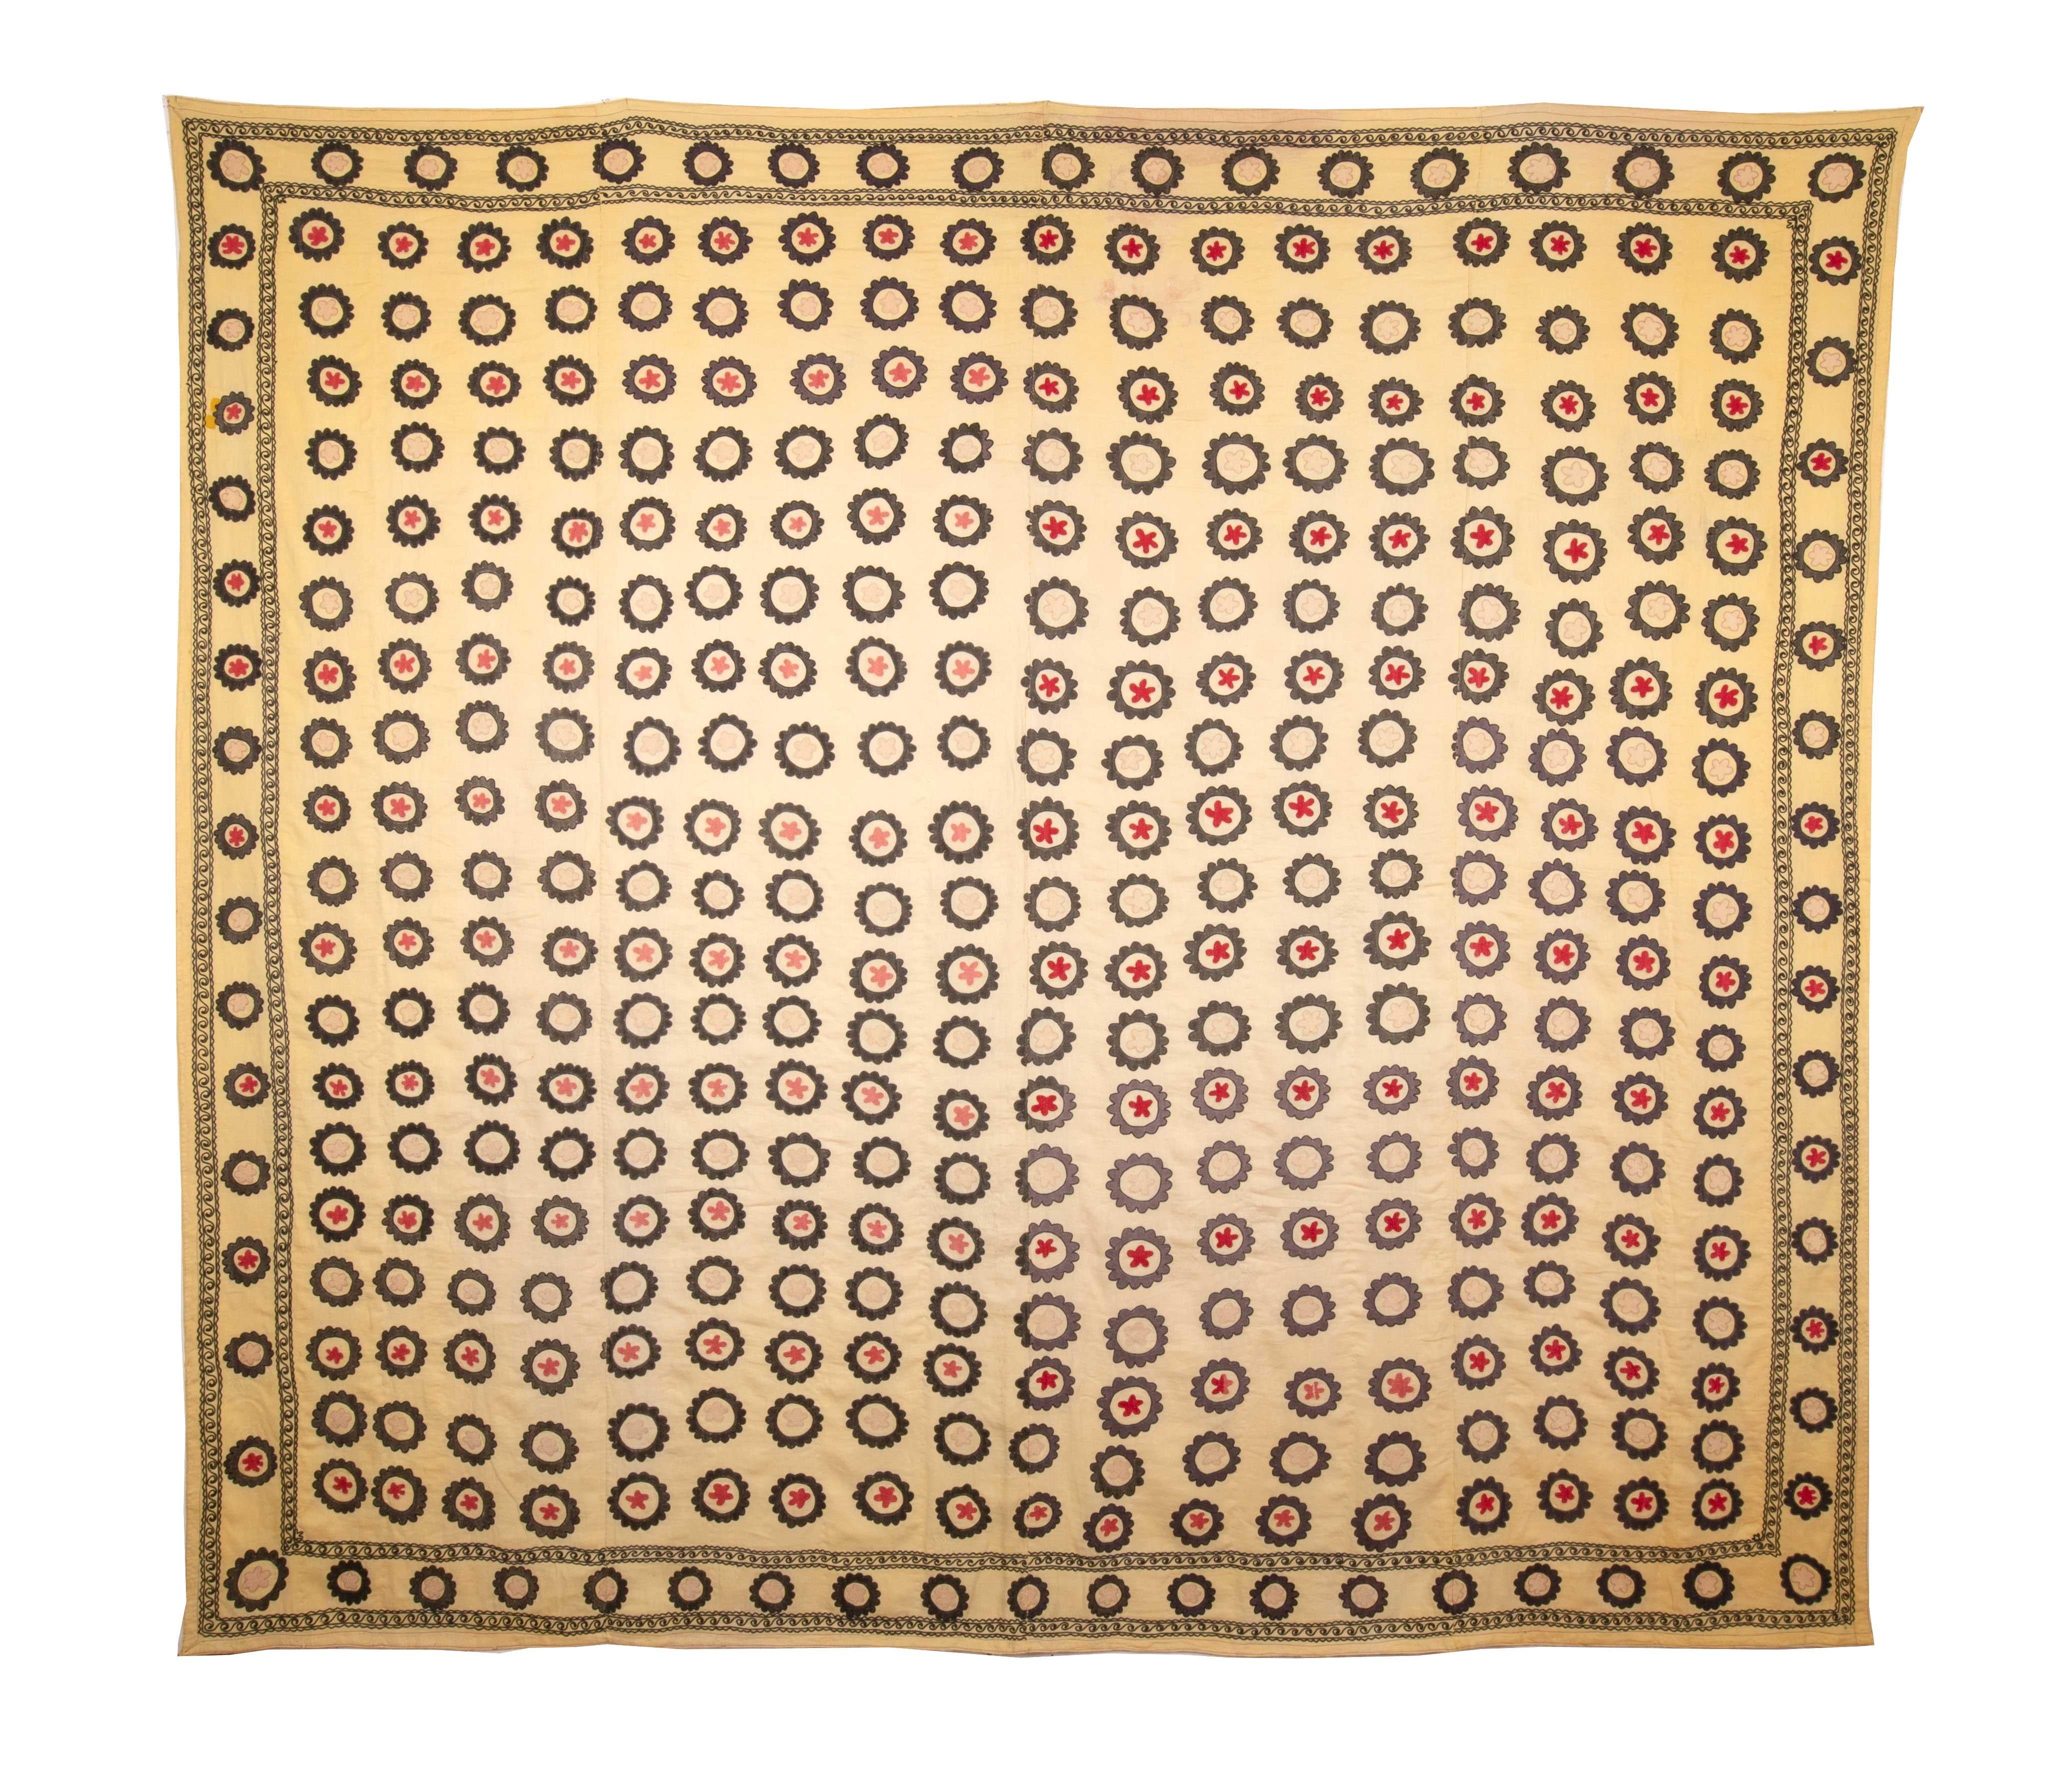 Dies ist eine Suzani aus Baumwolle aus den 1930er Jahren aus Samarkand, Usbekistan. Der Gesamtzustand ist gut und das Stück wurde unterfüttert.
Bitte beachten Sie, dass es sich bei dem Artikel um ein altes und gebrauchtes Exemplar handelt, das